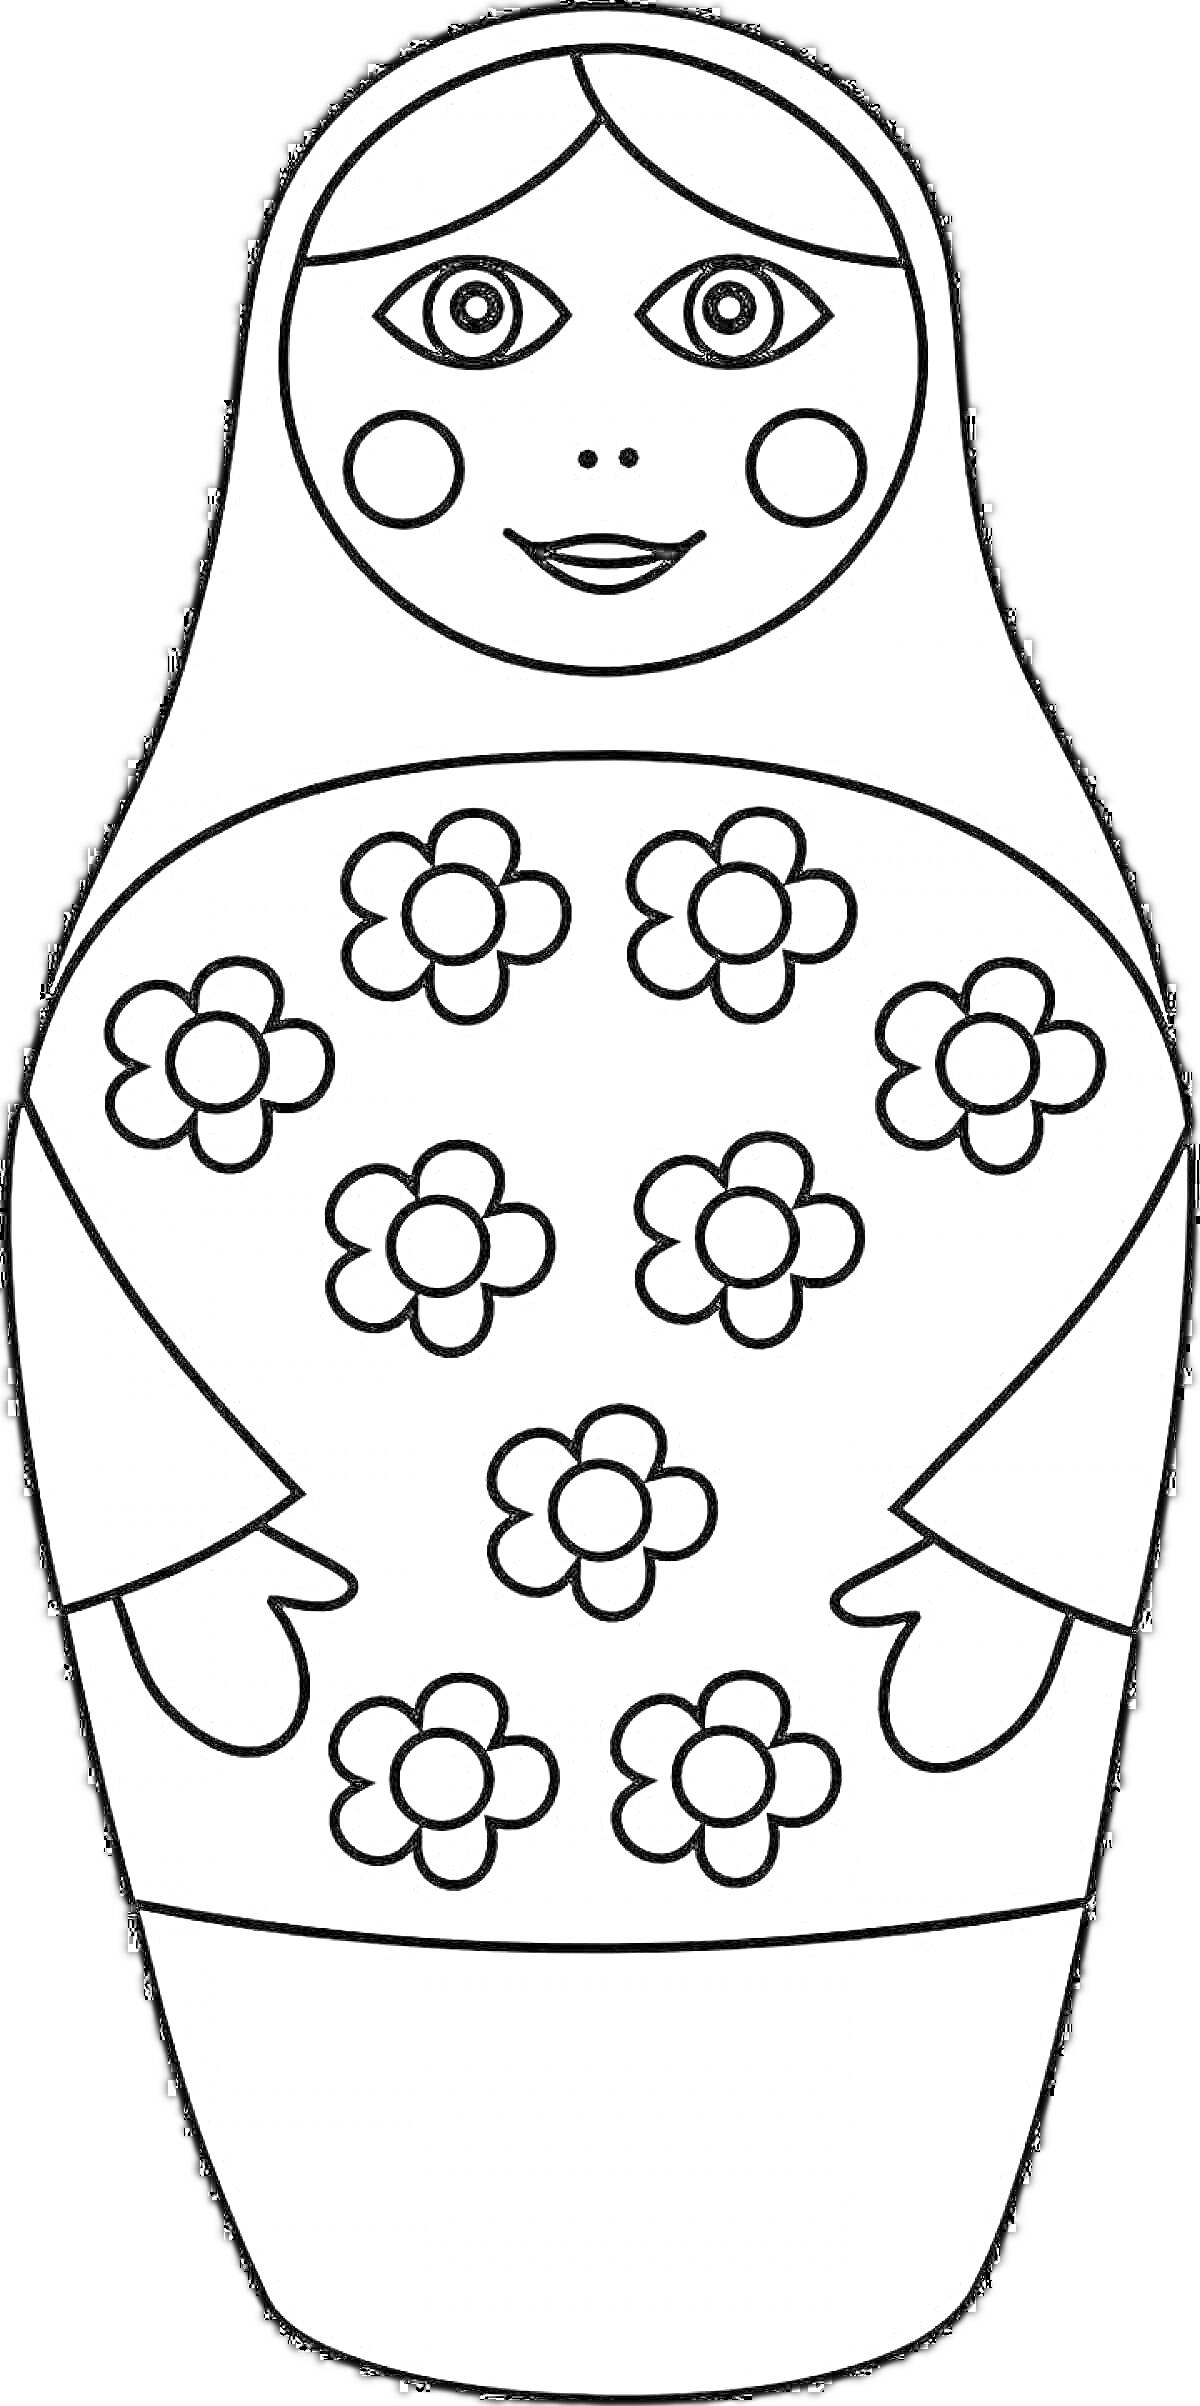 Раскраска Матрешка с цветочным узором в виде цветков и круглых щечек